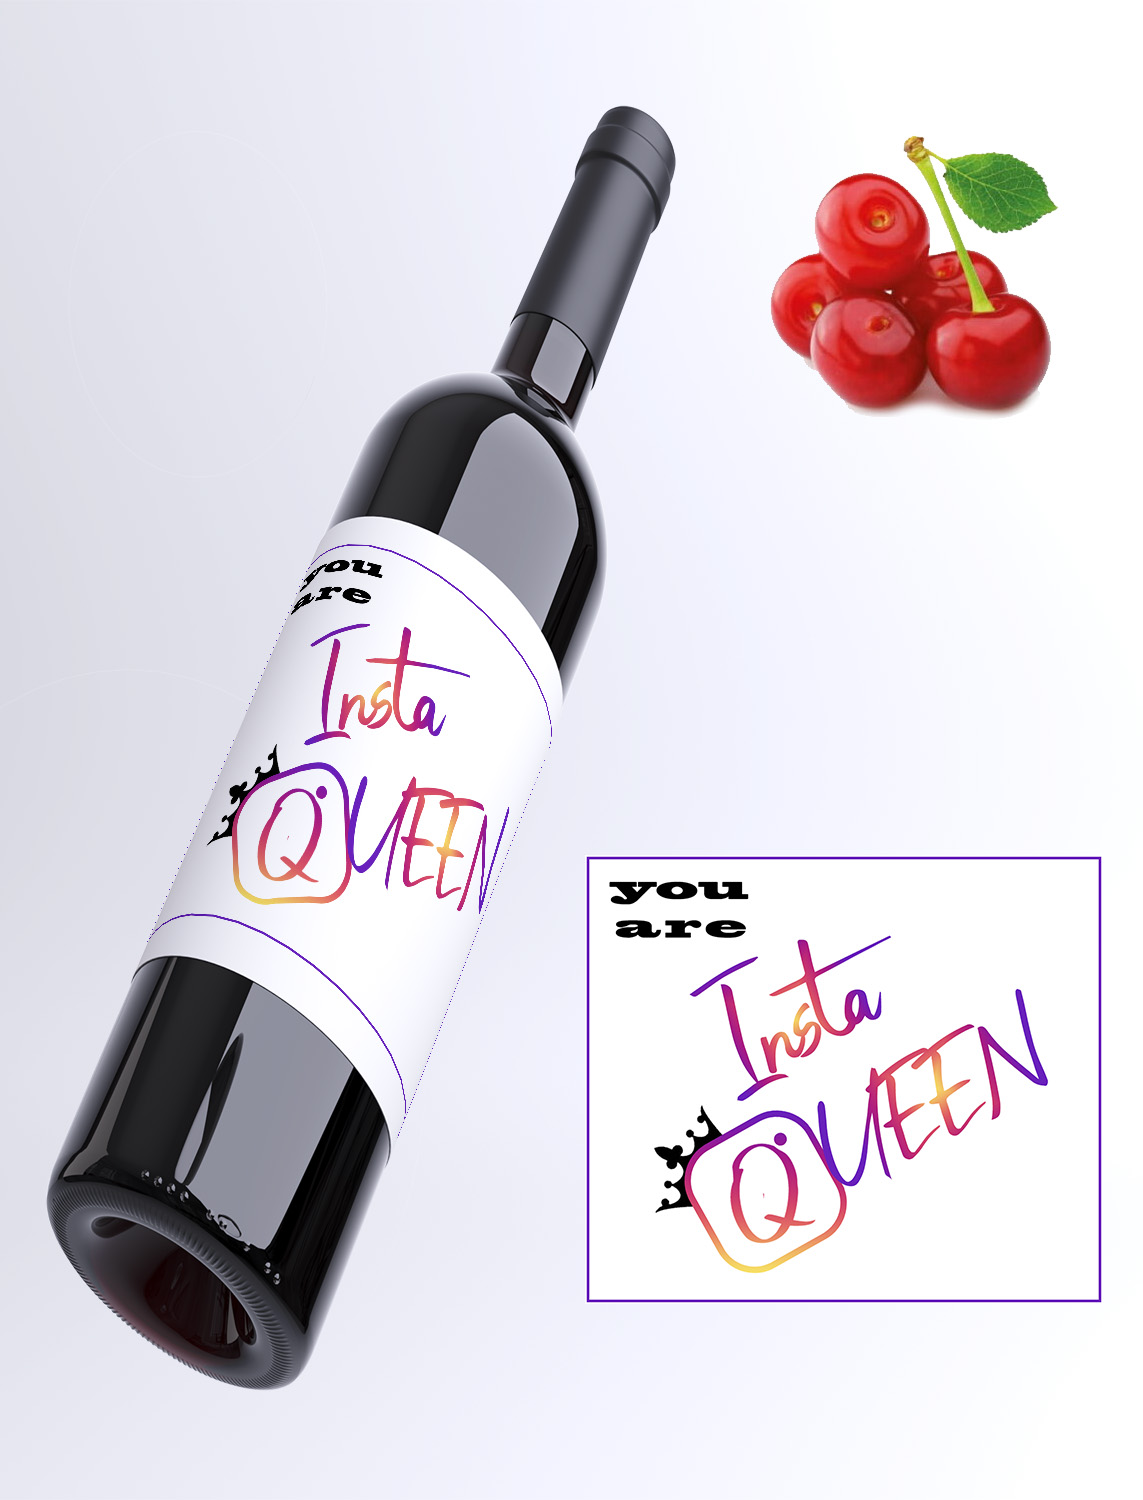 Instagram queen - Višňové víno 